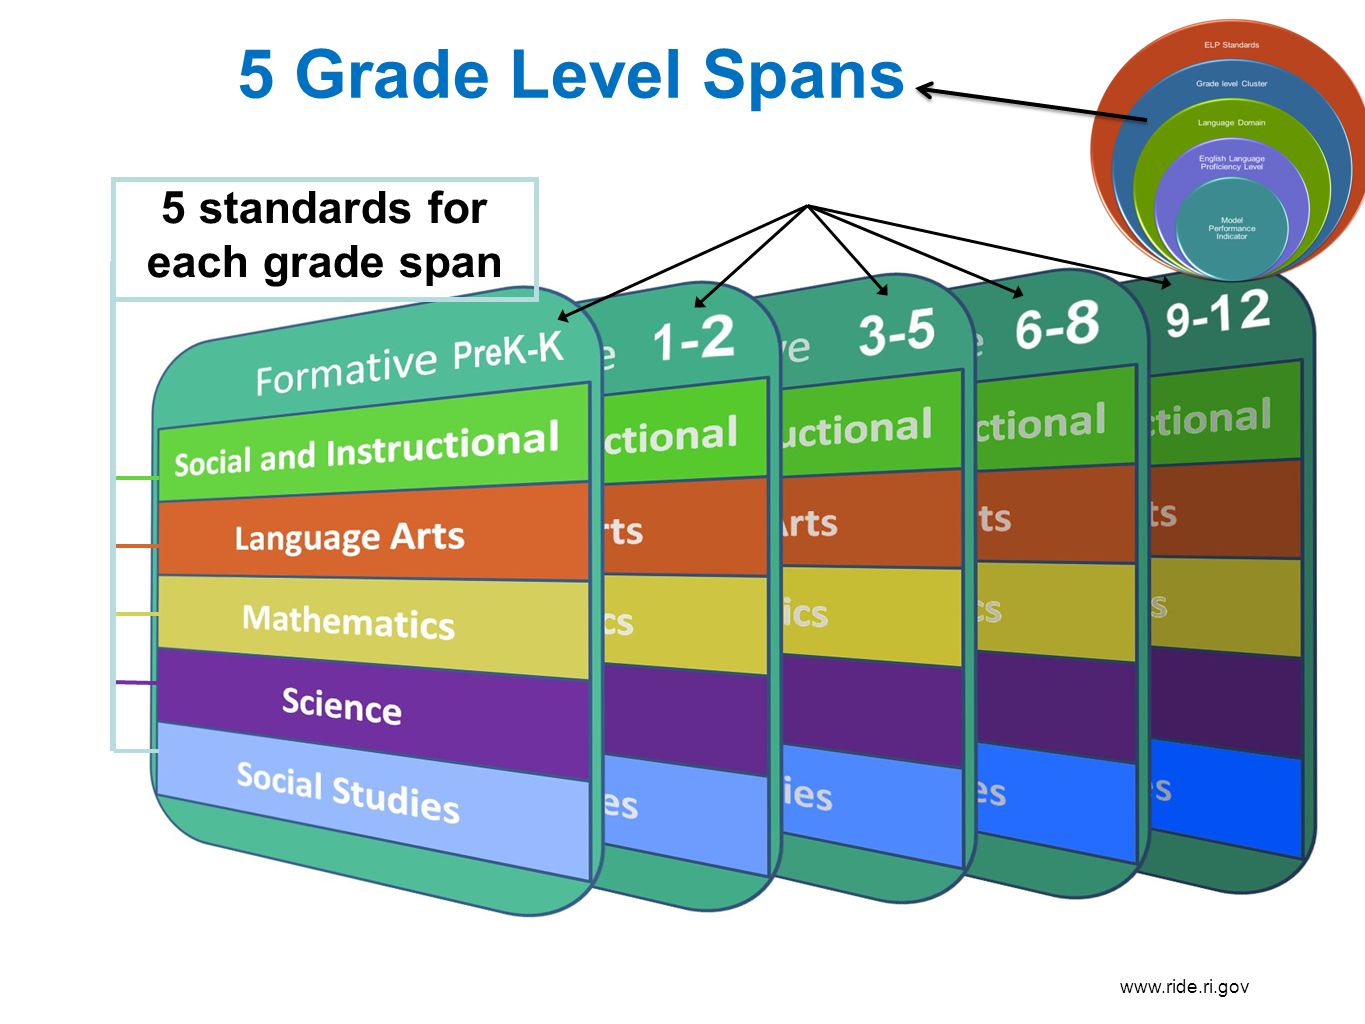 5 standards for each grade span